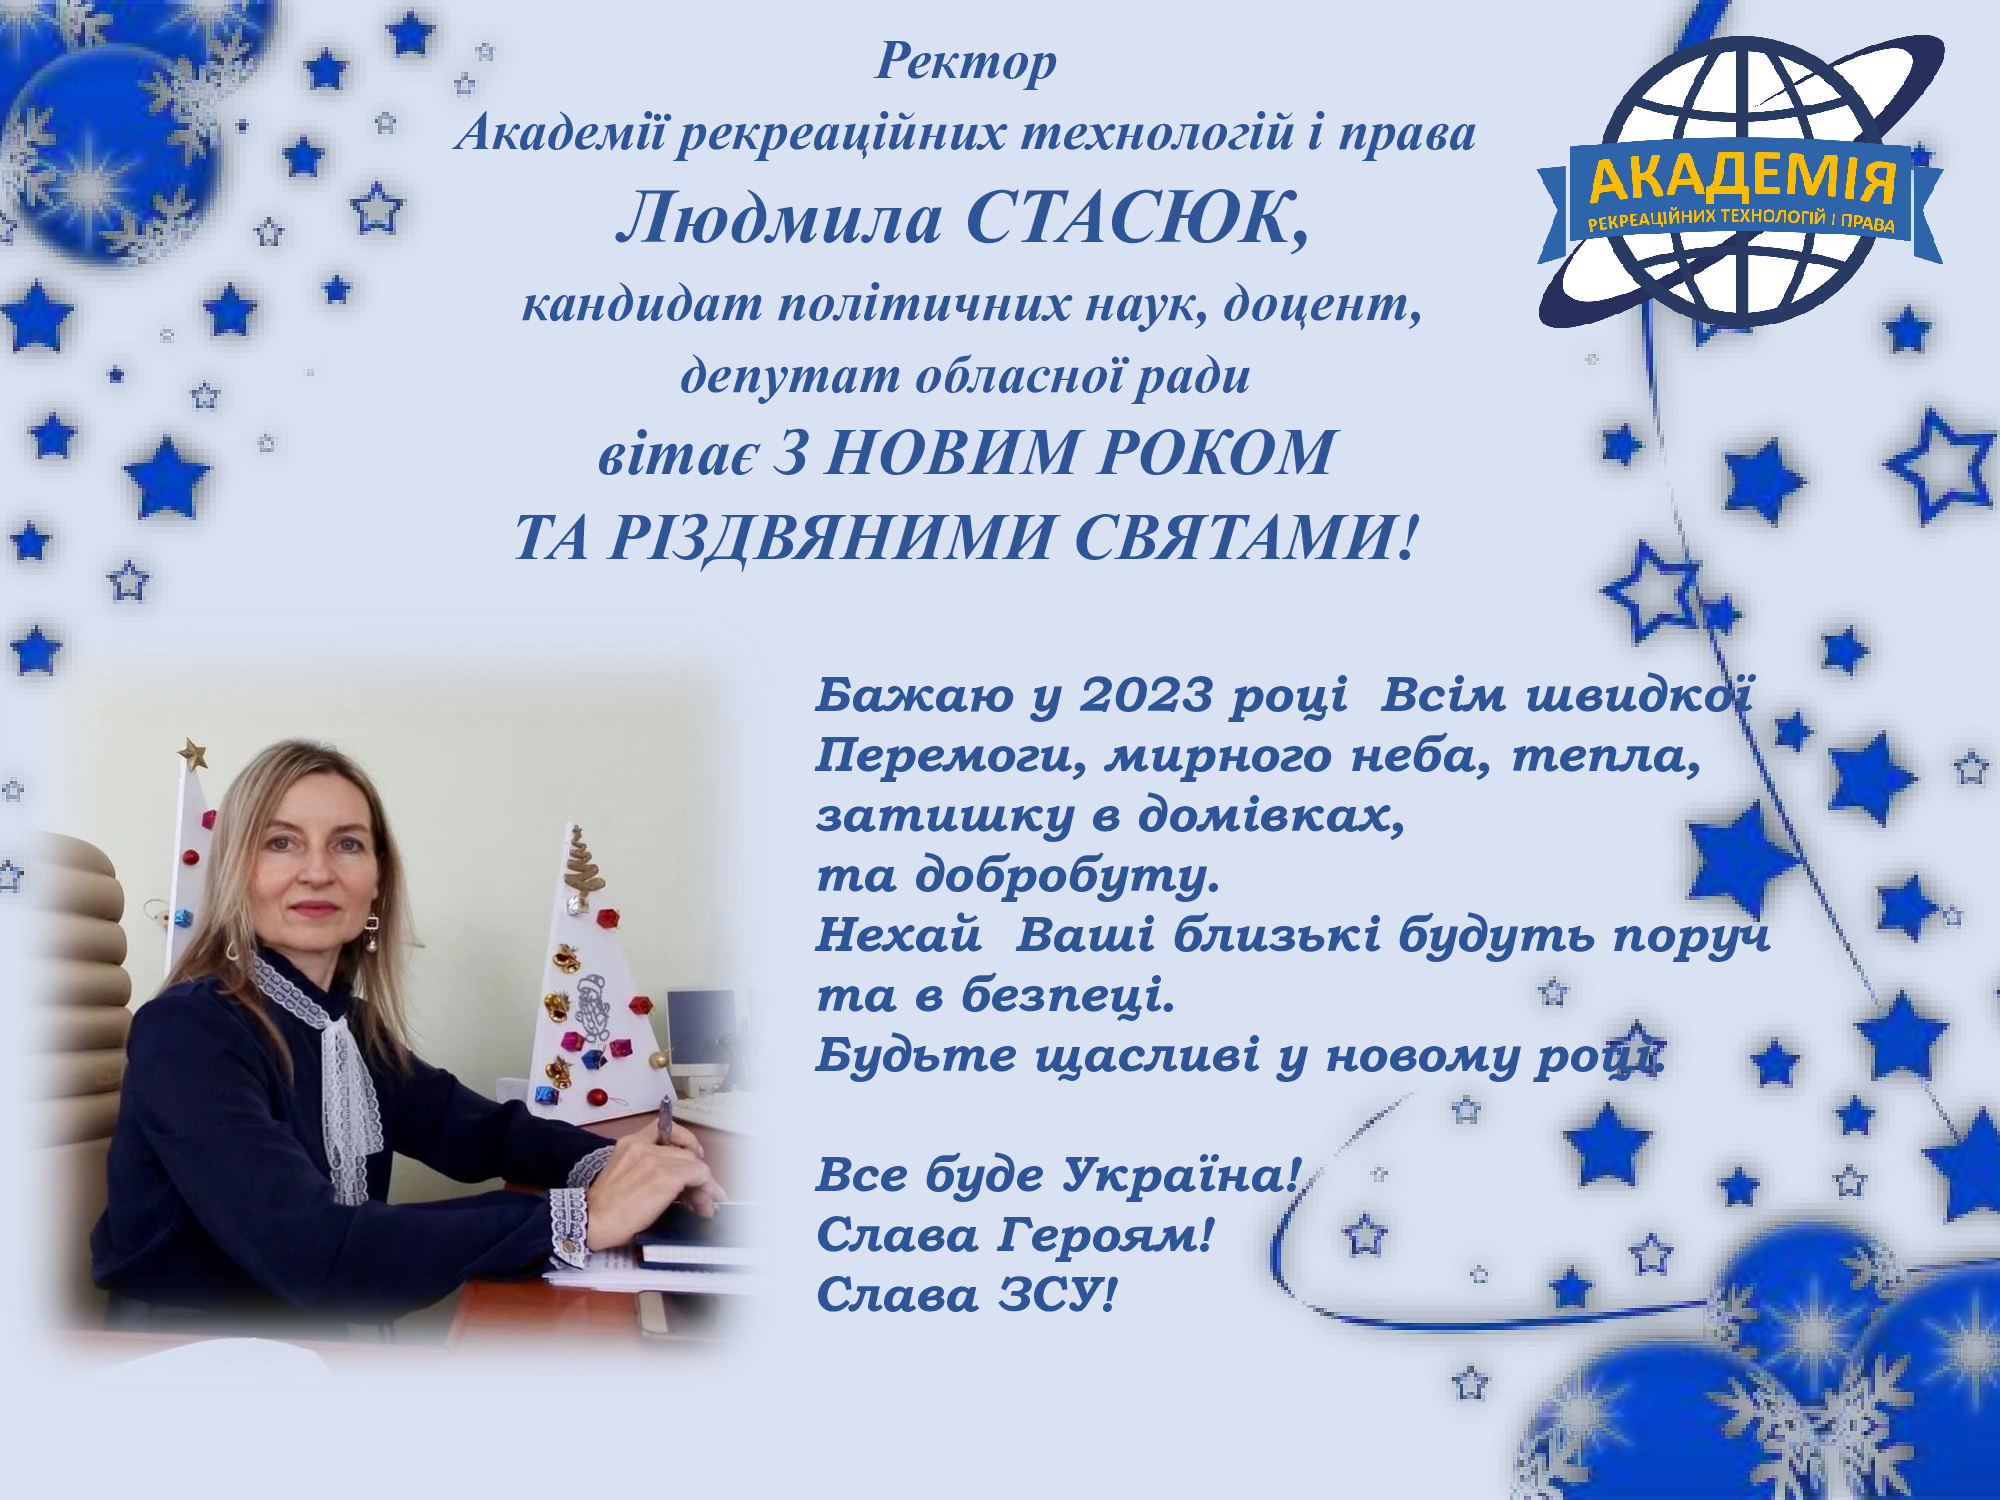 Ректор Академії Людмила Стасюк вітає з Новорічними святами